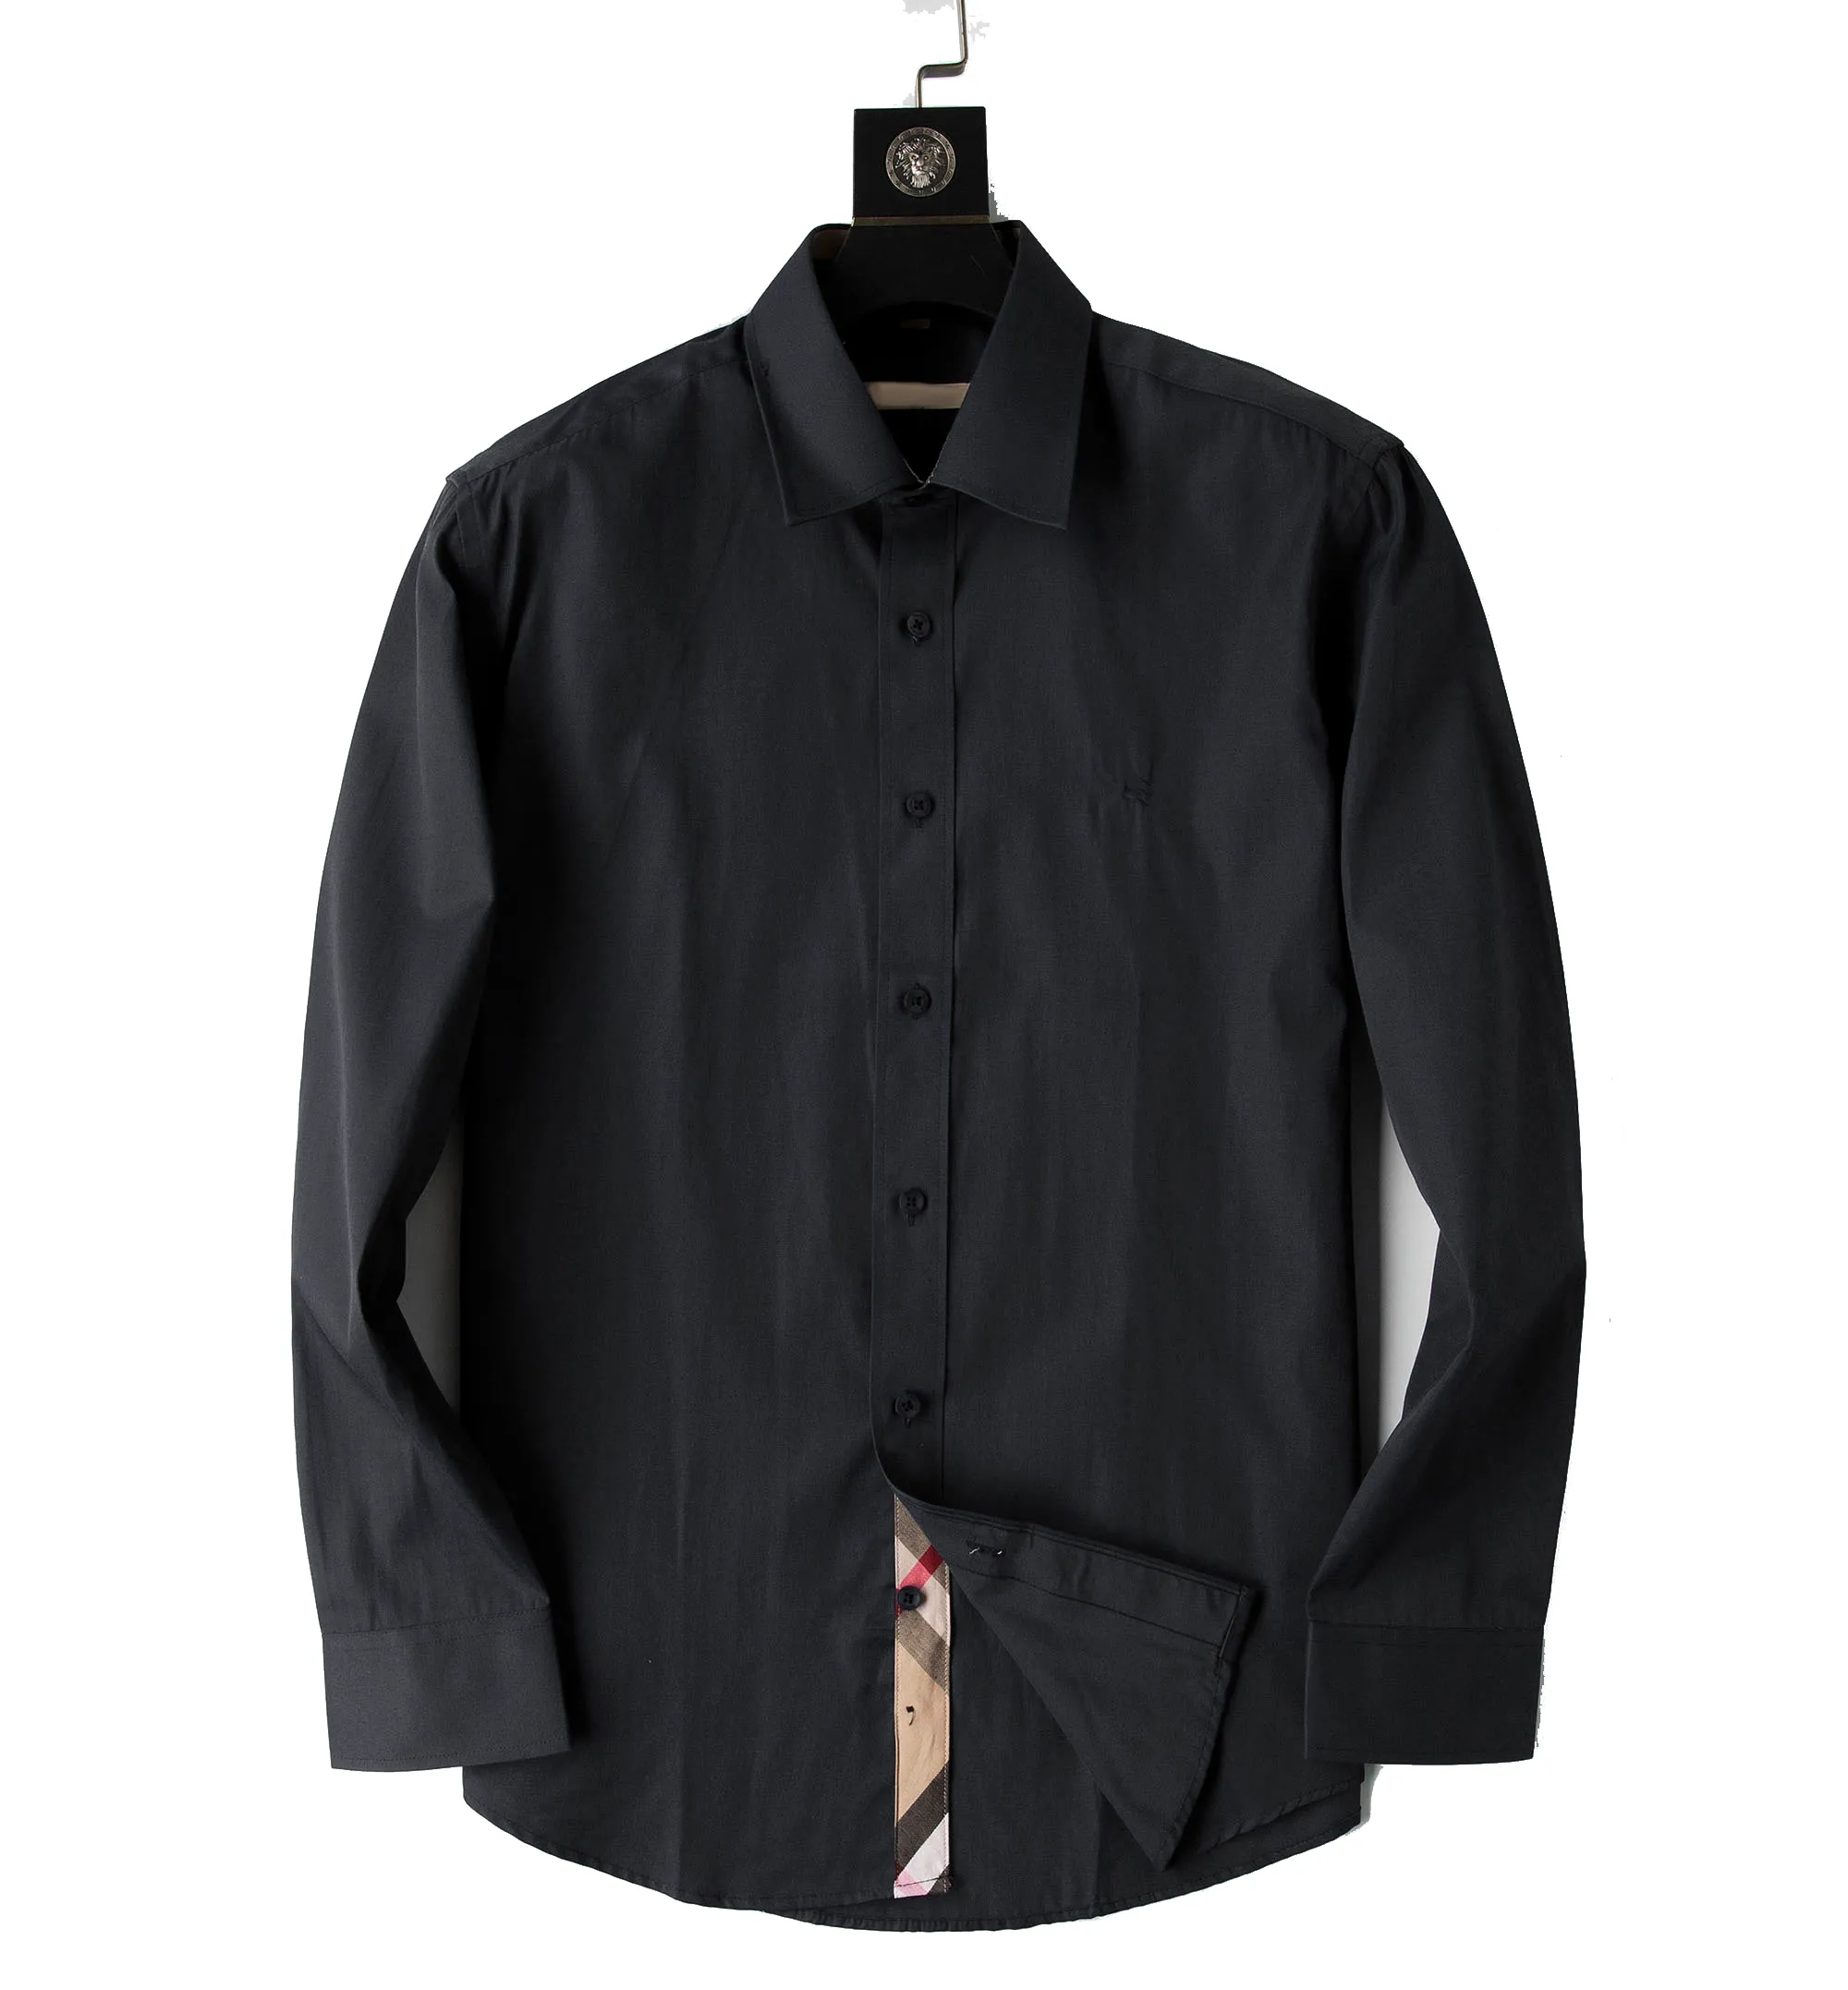 2021 Luxus-Designer-Herren-Freizeithemden Anzug Mode Freizeithemd Marke Frühling und Herbst Slim Die modischste Kleidung M-3XL # 01